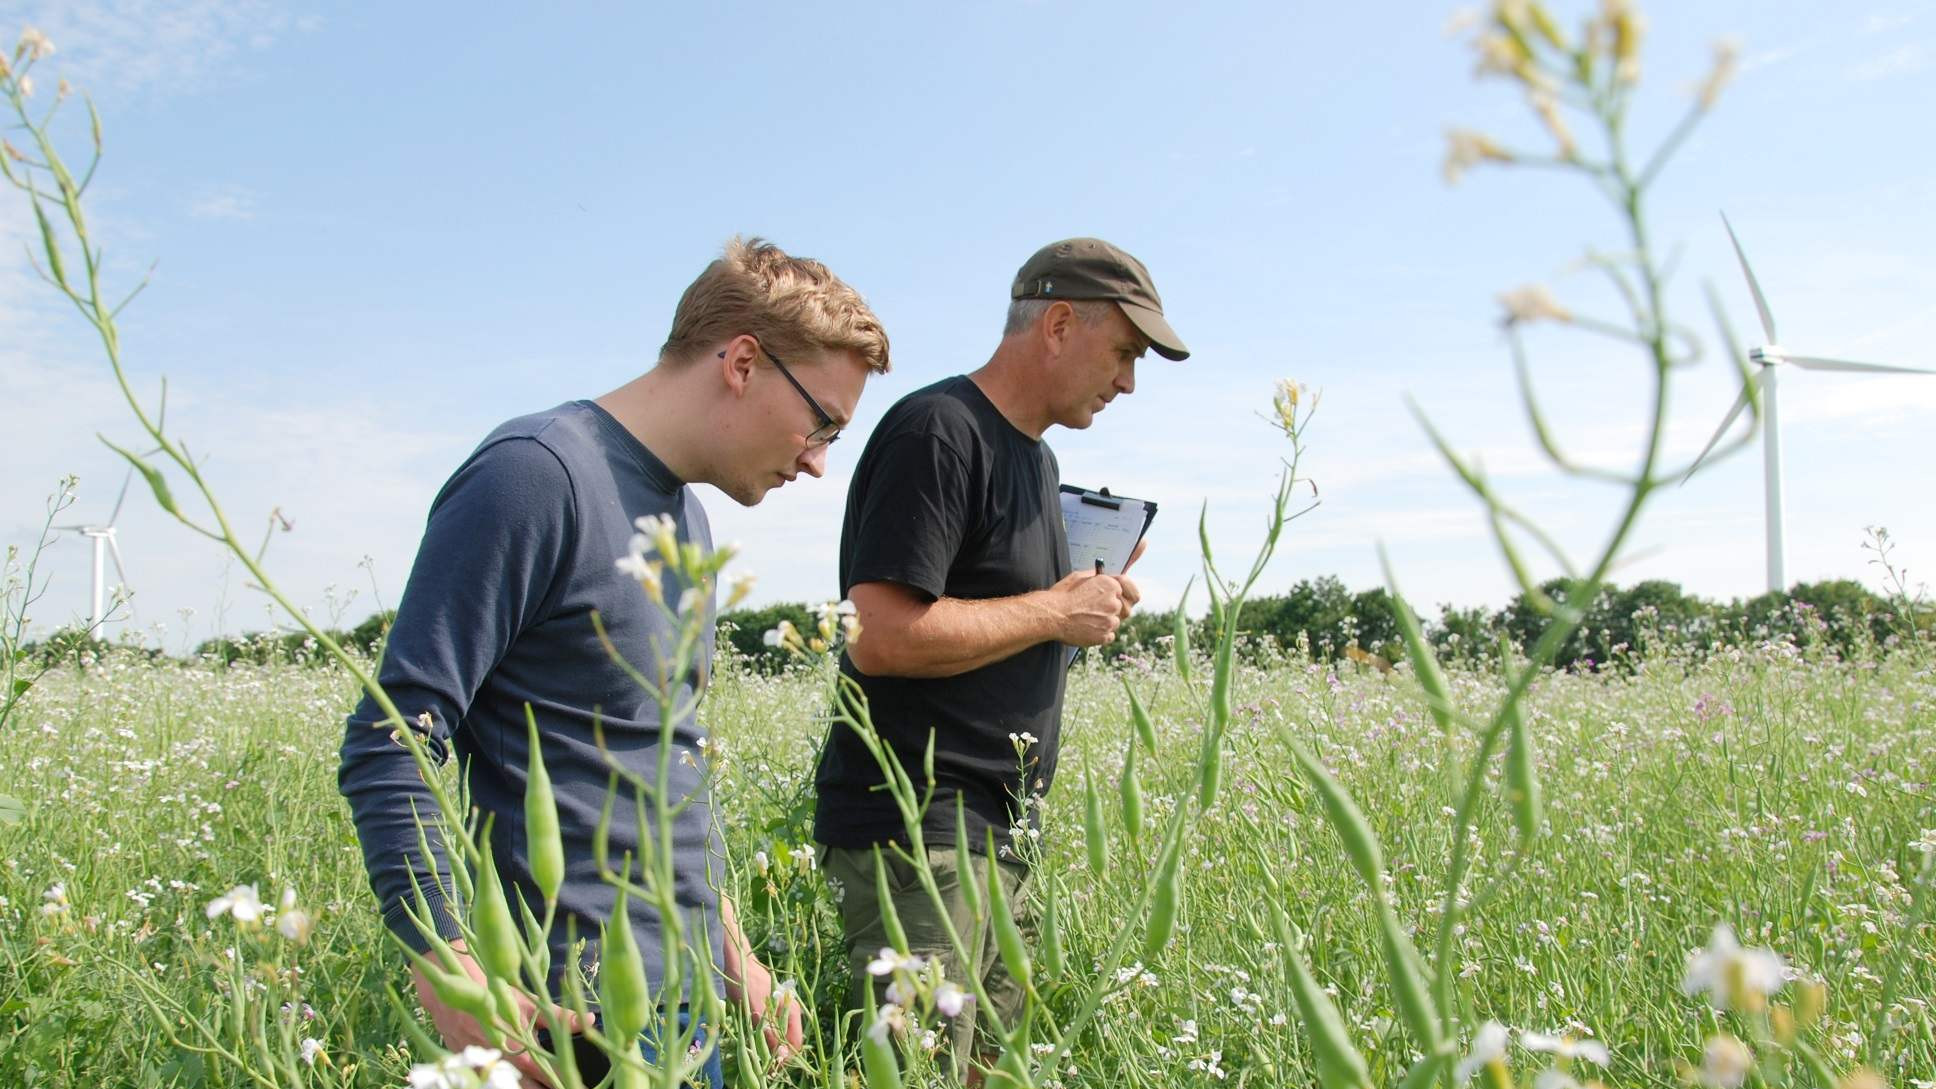 Jens Mortensen og Bent Rasmussen kigger efter  insekter i mark med